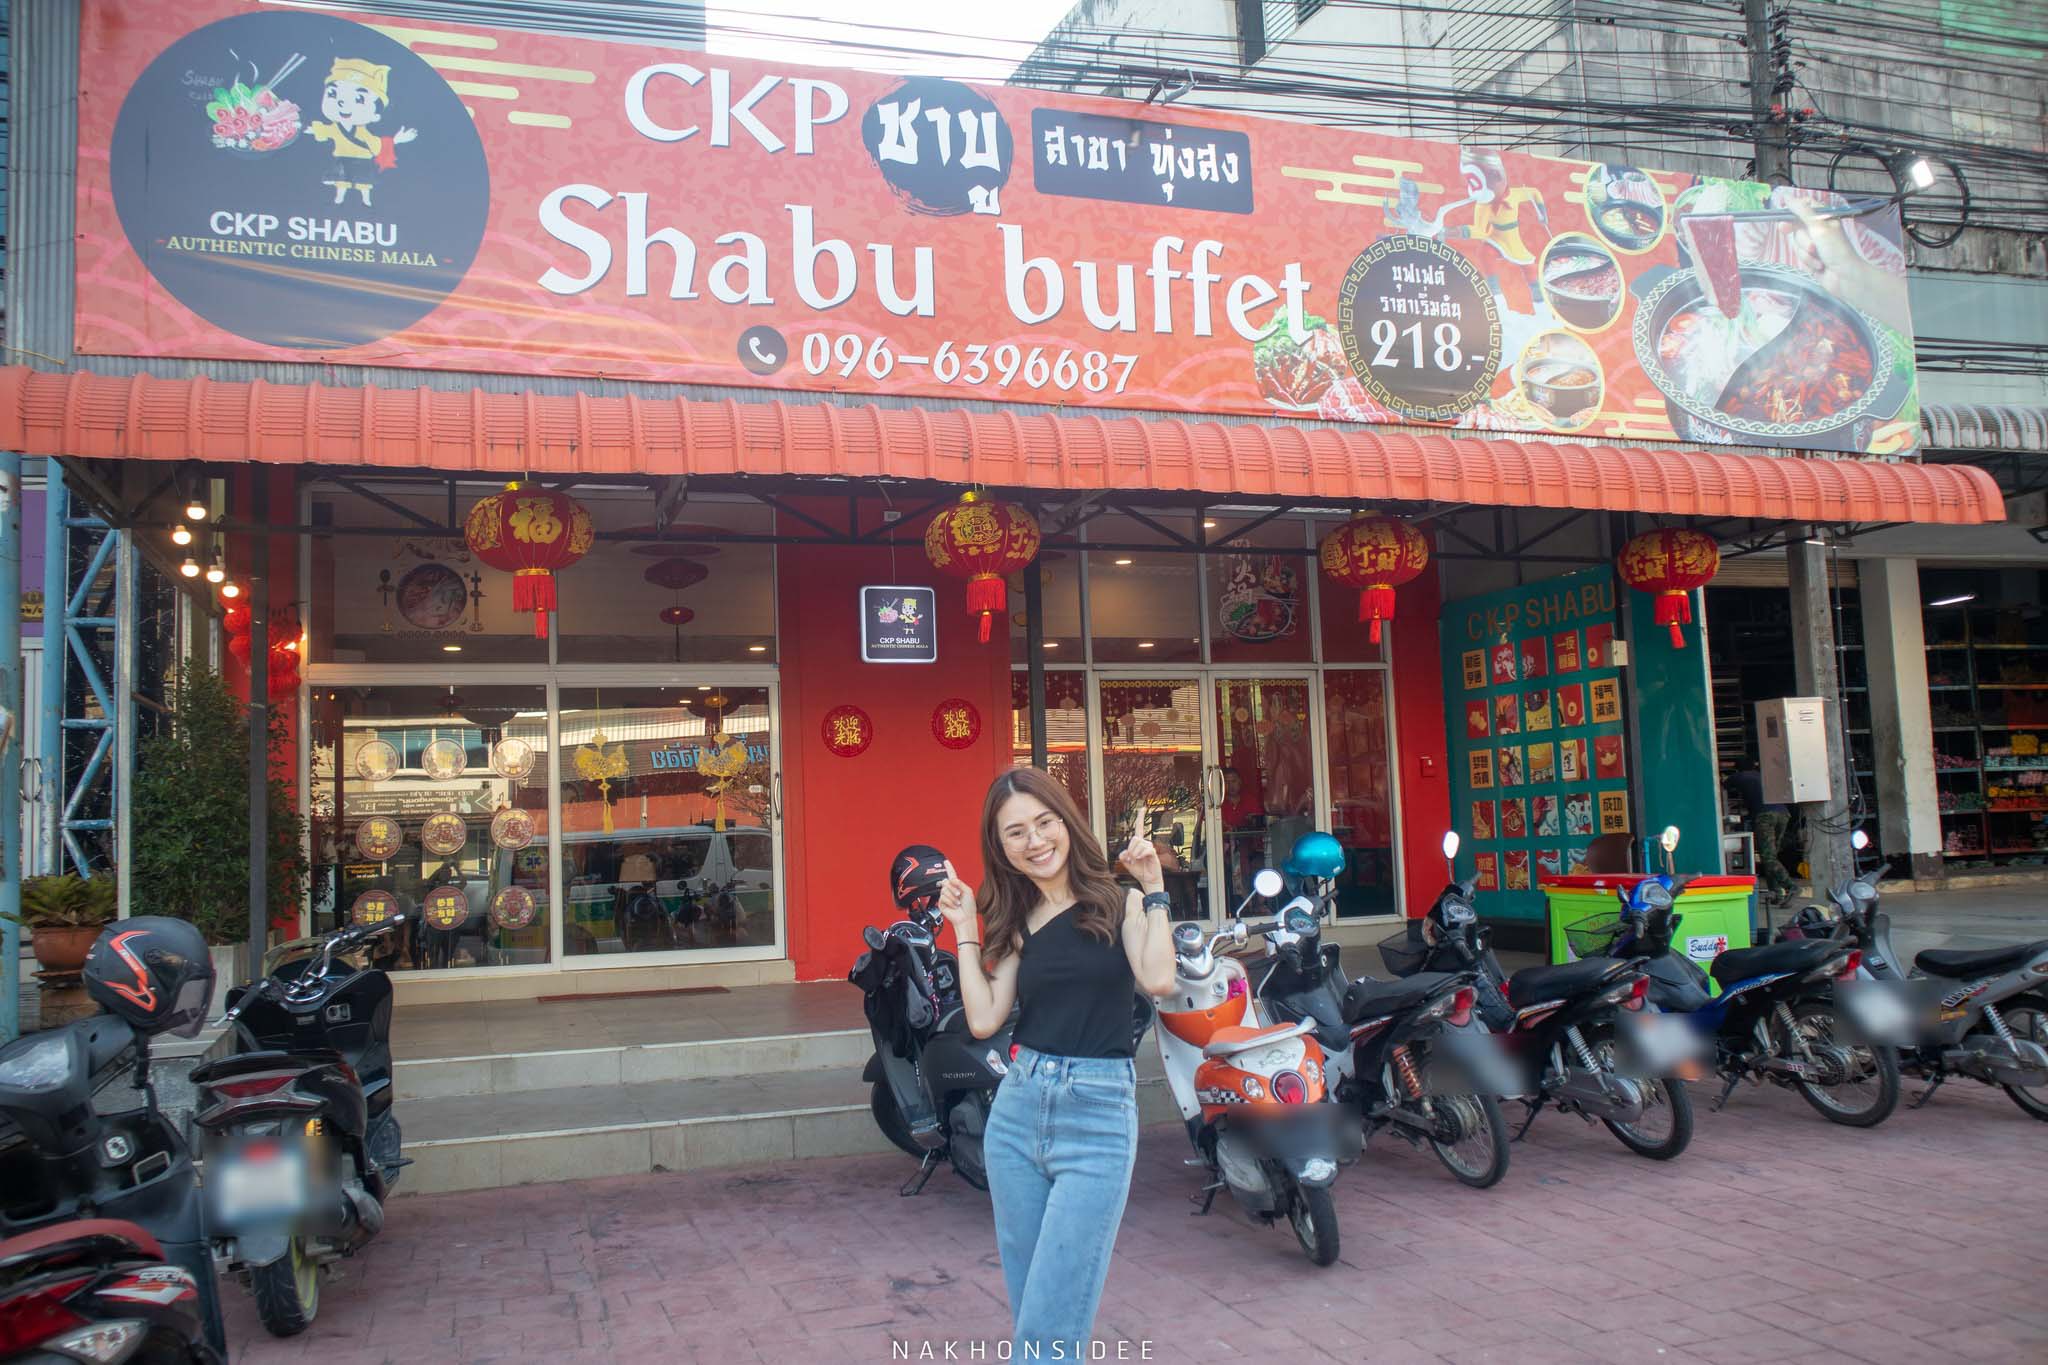  หน้าร้านอยู่ทุ่งสง-เยื้องสหไทยพลาซ่าเลยฮะ ร้านชาบู,ทุ่งสง,หม่าล่า,อร่อยเด็ด,ckpshabu